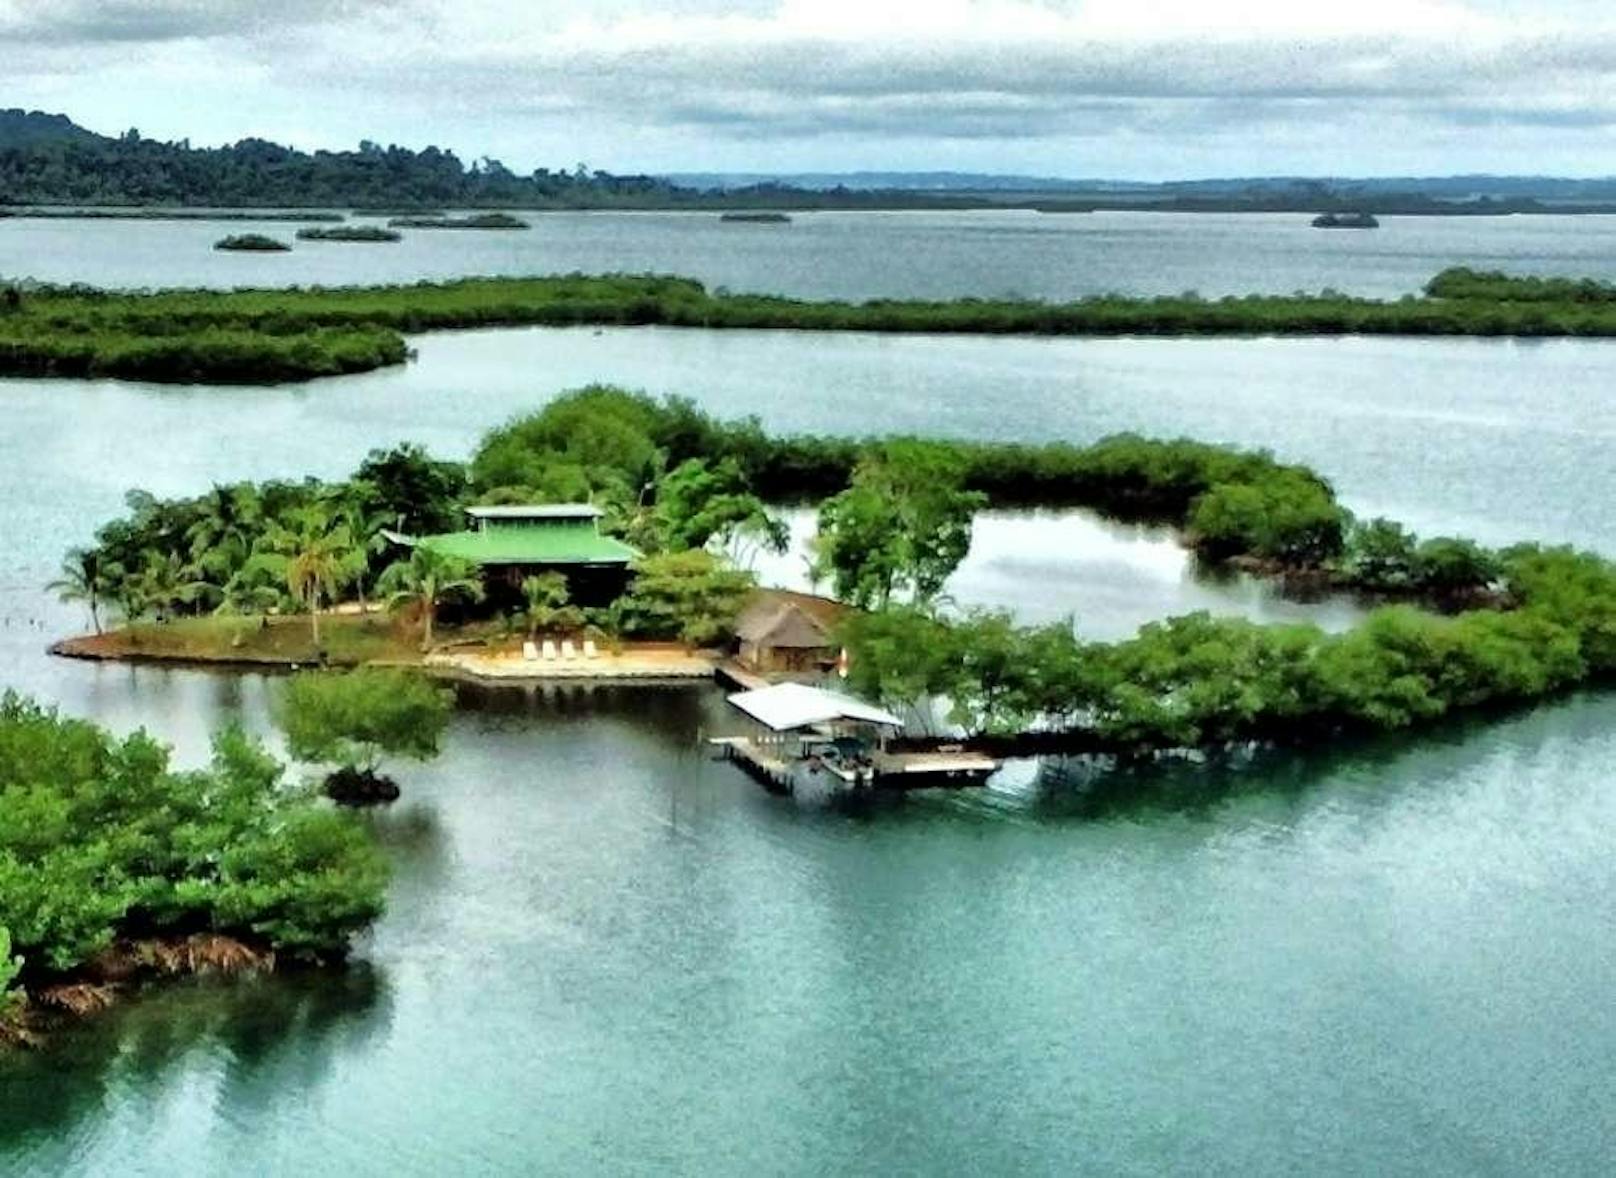 <b>Isla Paloma, Bocas del Toro, Panama</b>
Bebaut und trotzdem etwas tropischer ist dieses Kleinod in Panama.